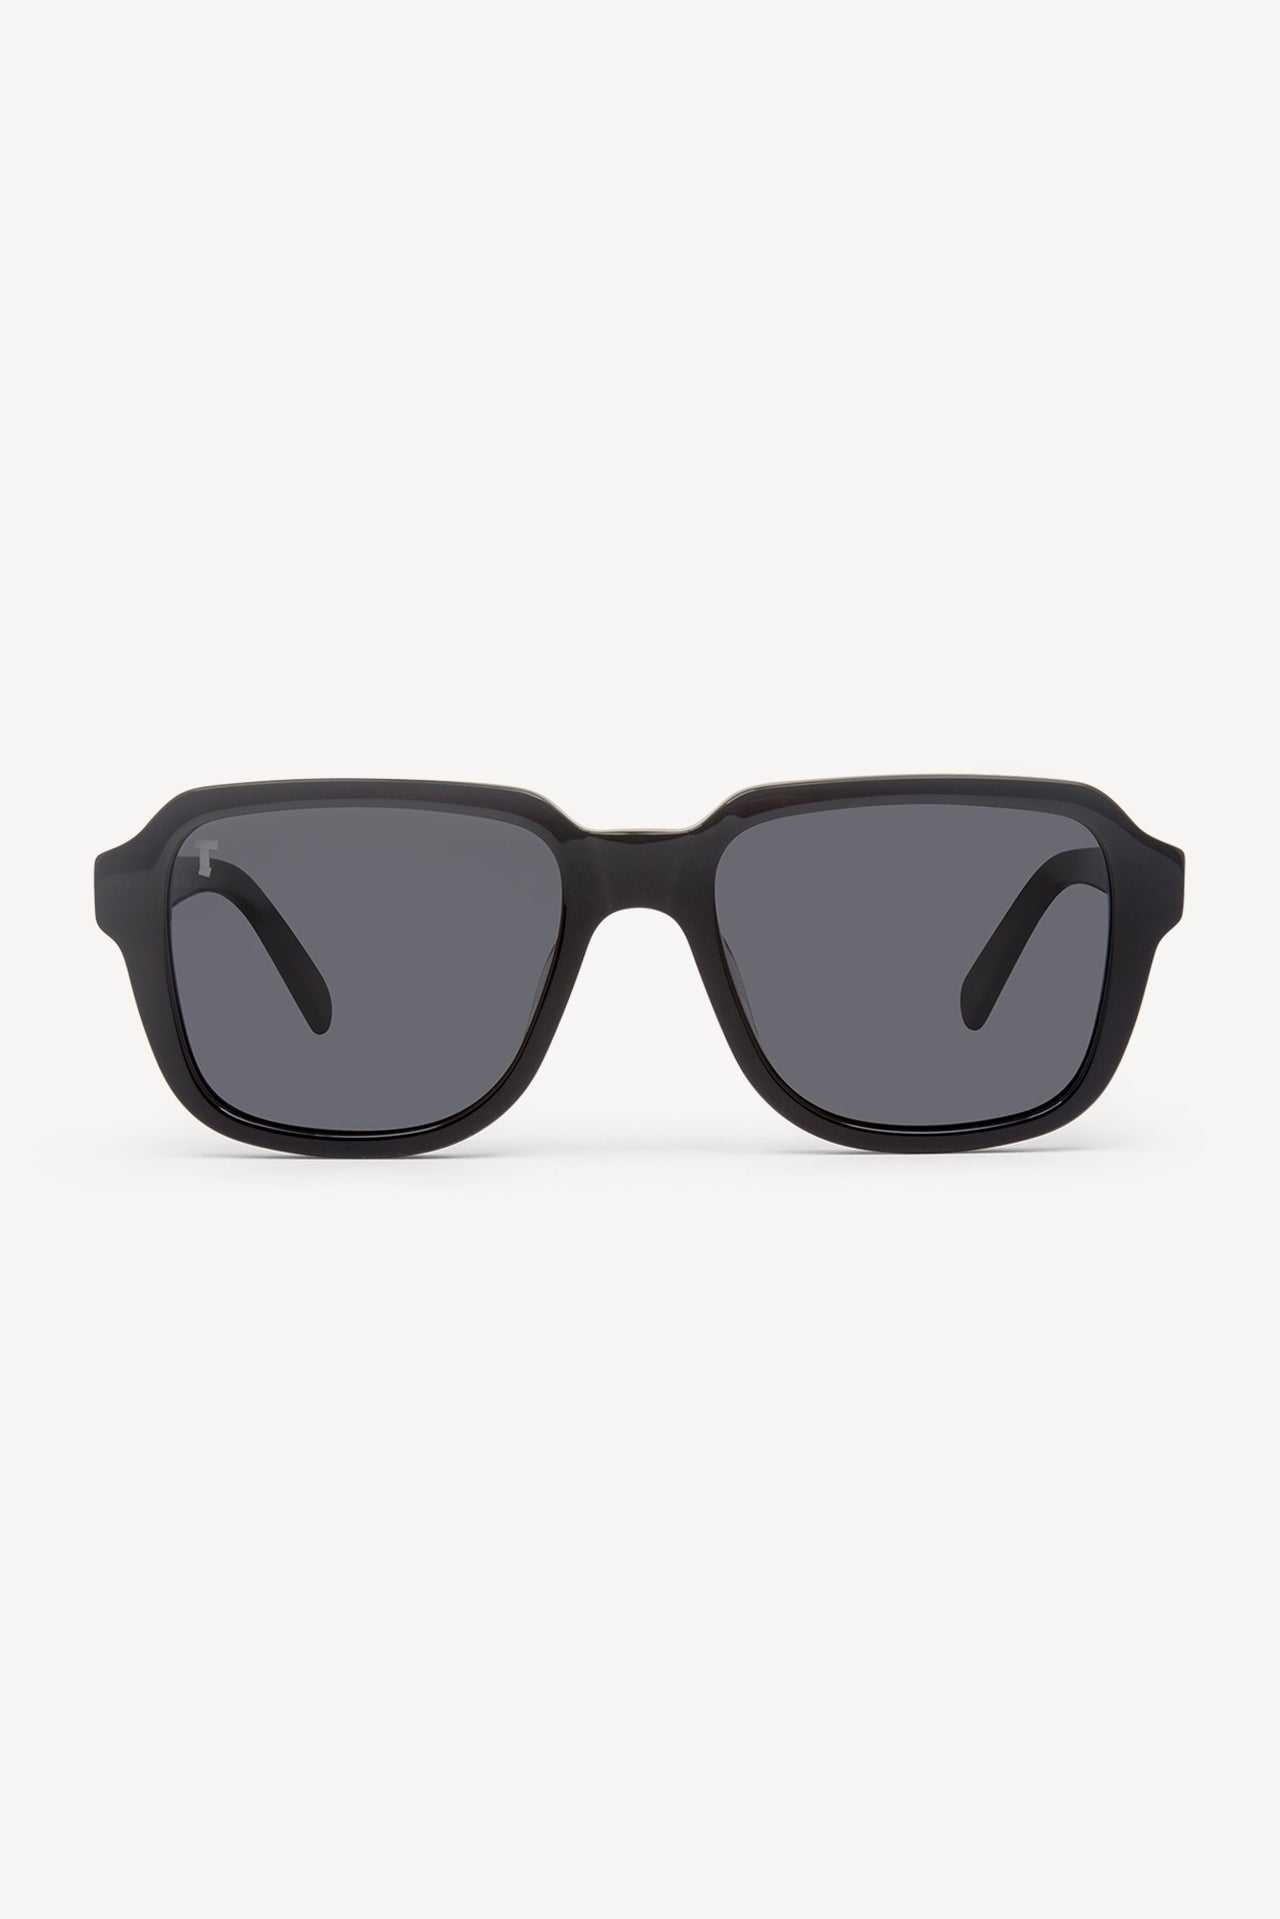 TOATIE Casablanca Square Sunglasses BLACK/BLACK